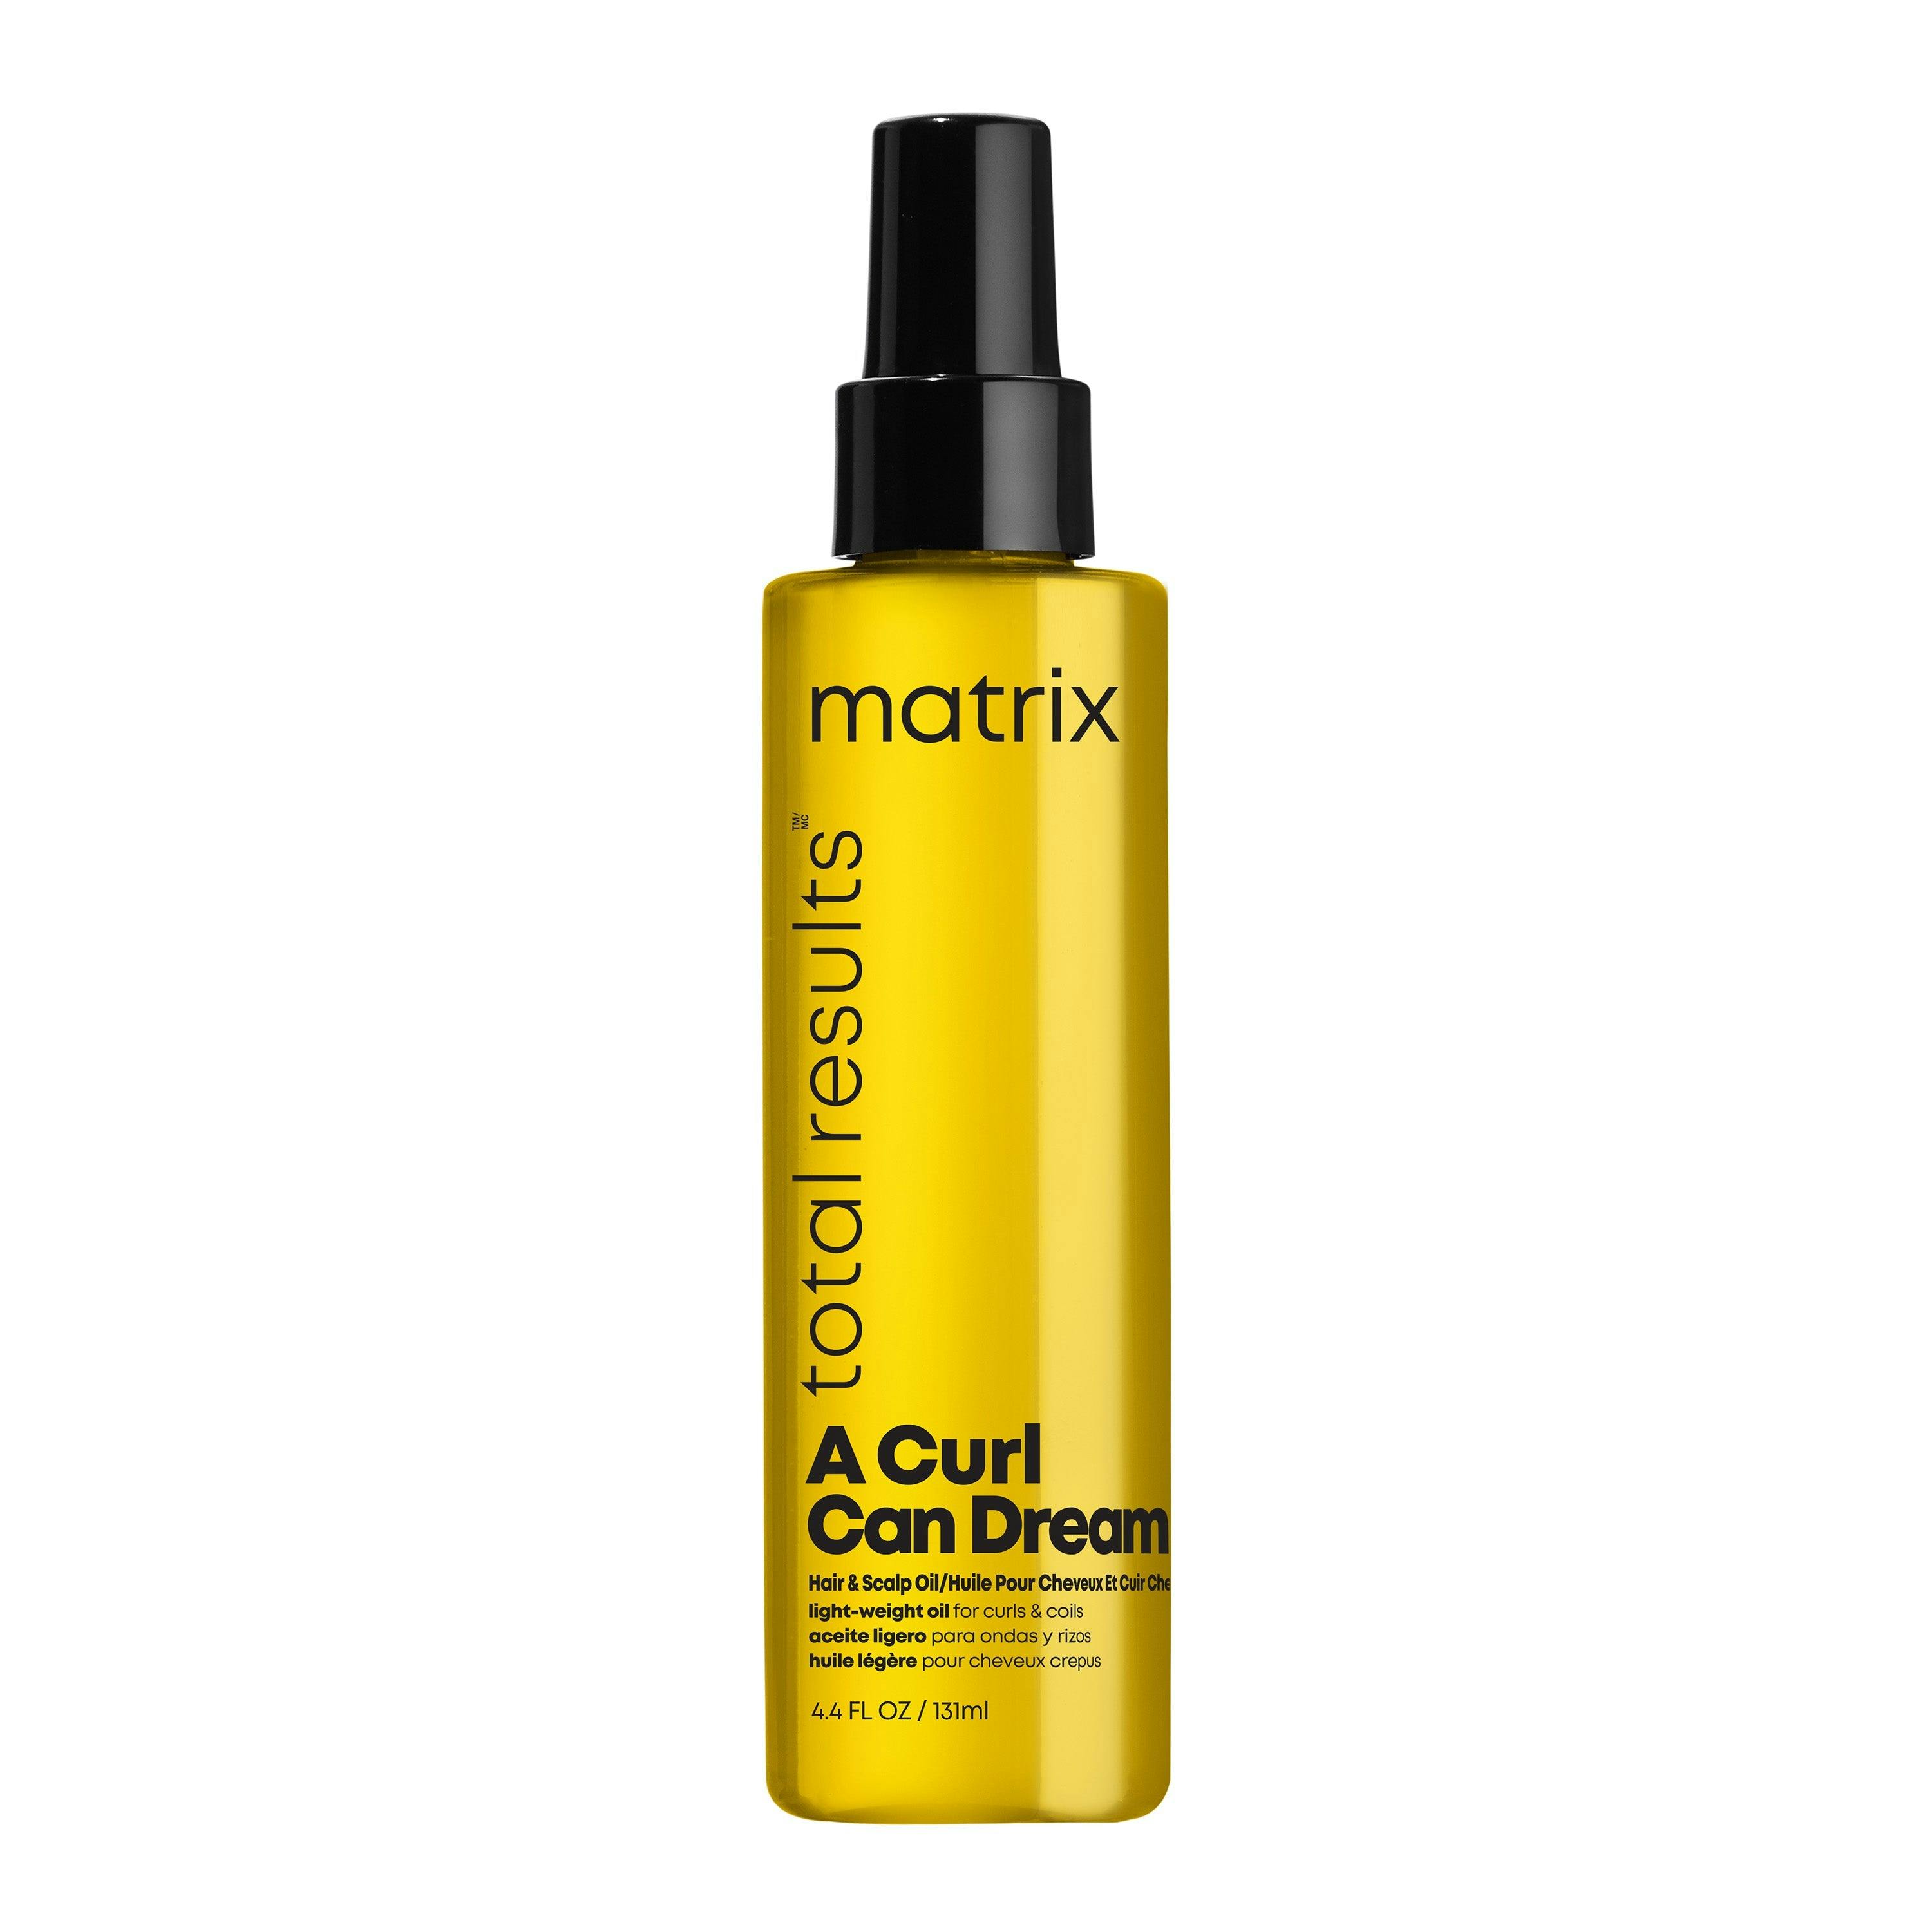 Matrix A Curl Can Dream Oil 131ml